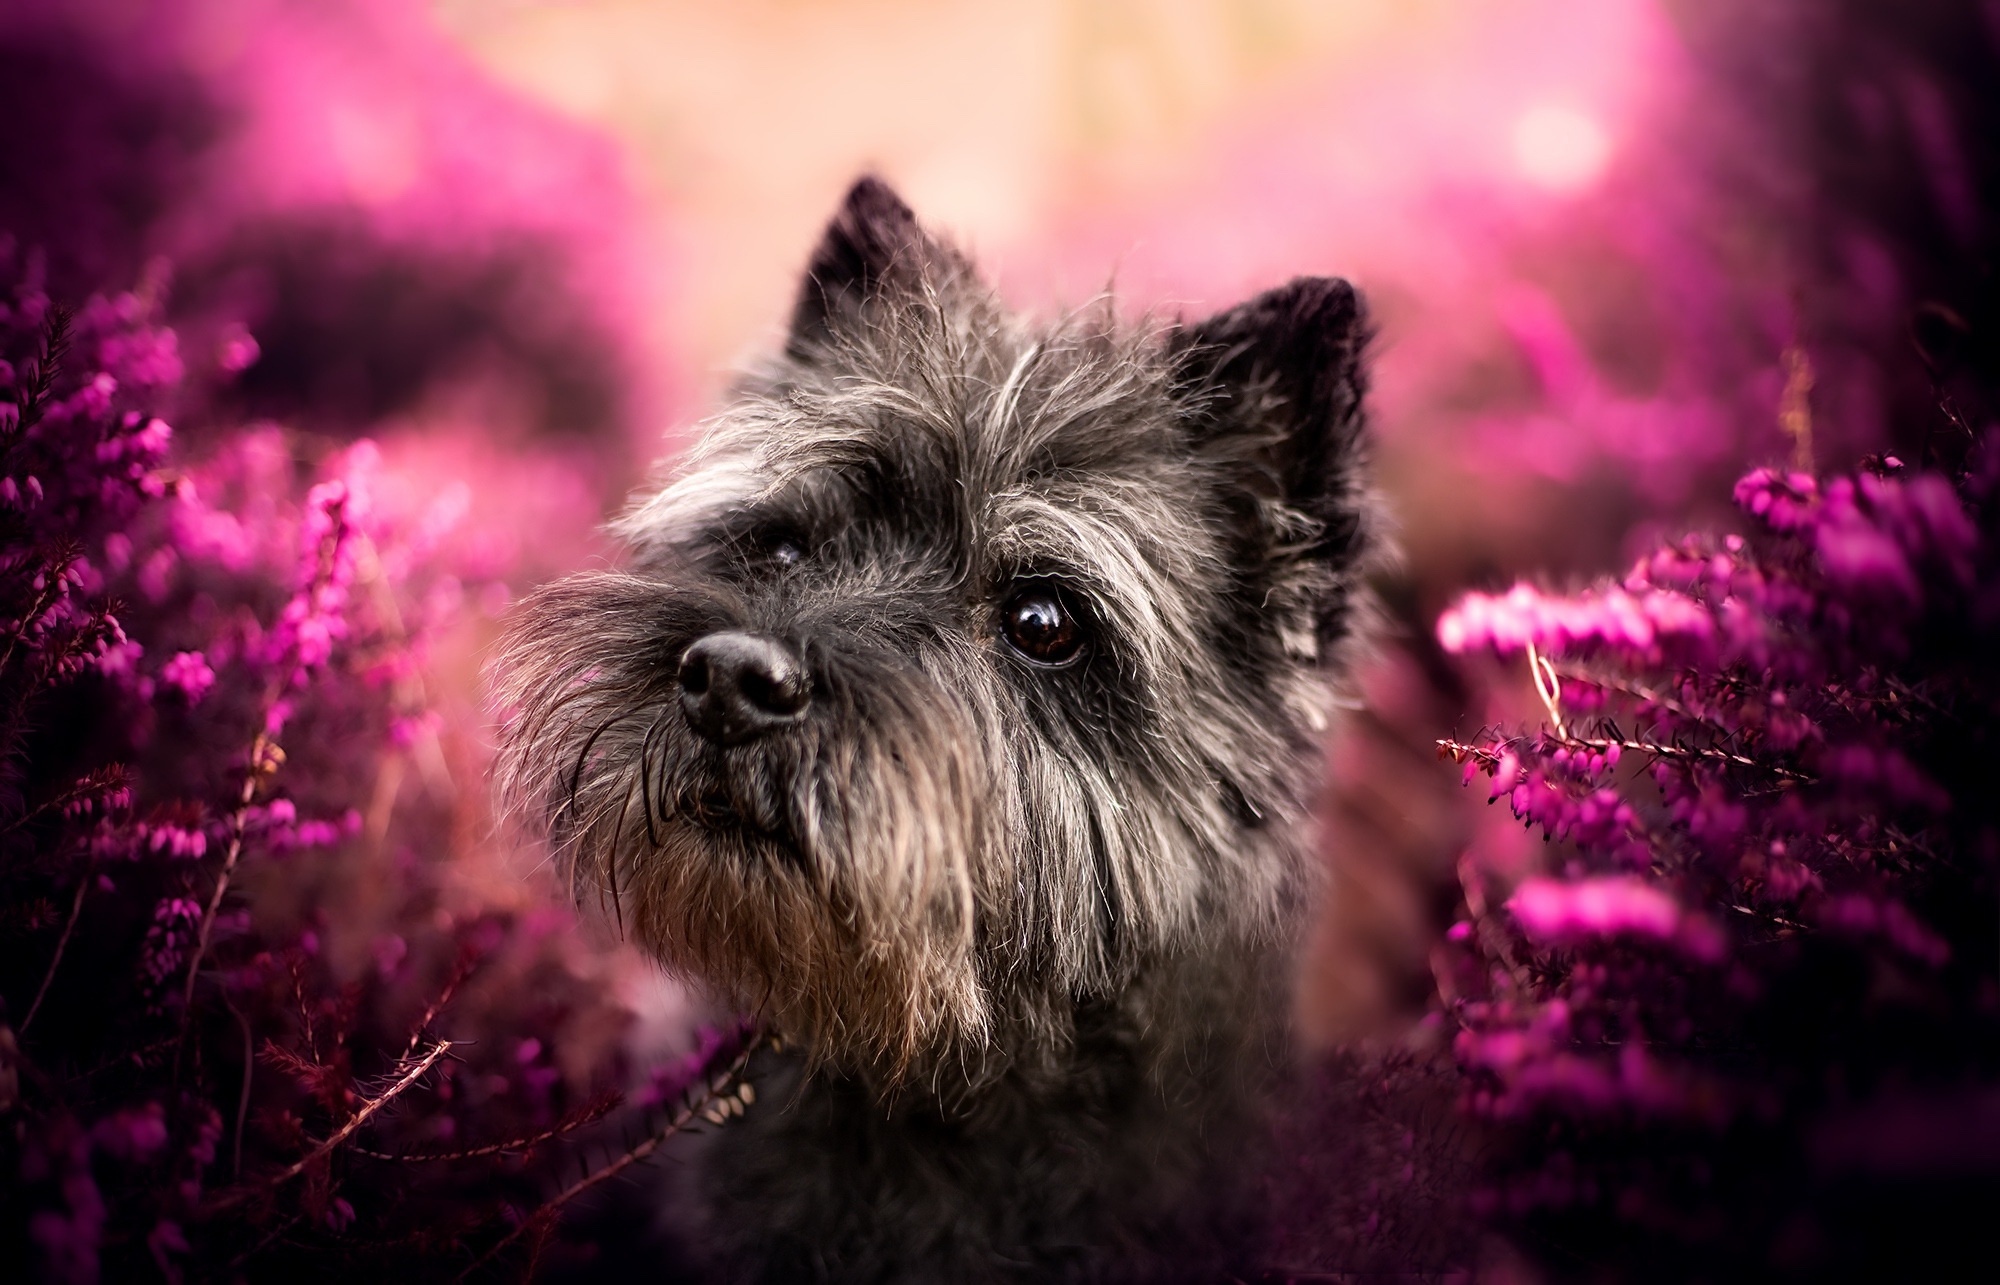 Descarga gratuita de fondo de pantalla para móvil de Animales, Perros, Perro, Flor Purpura.